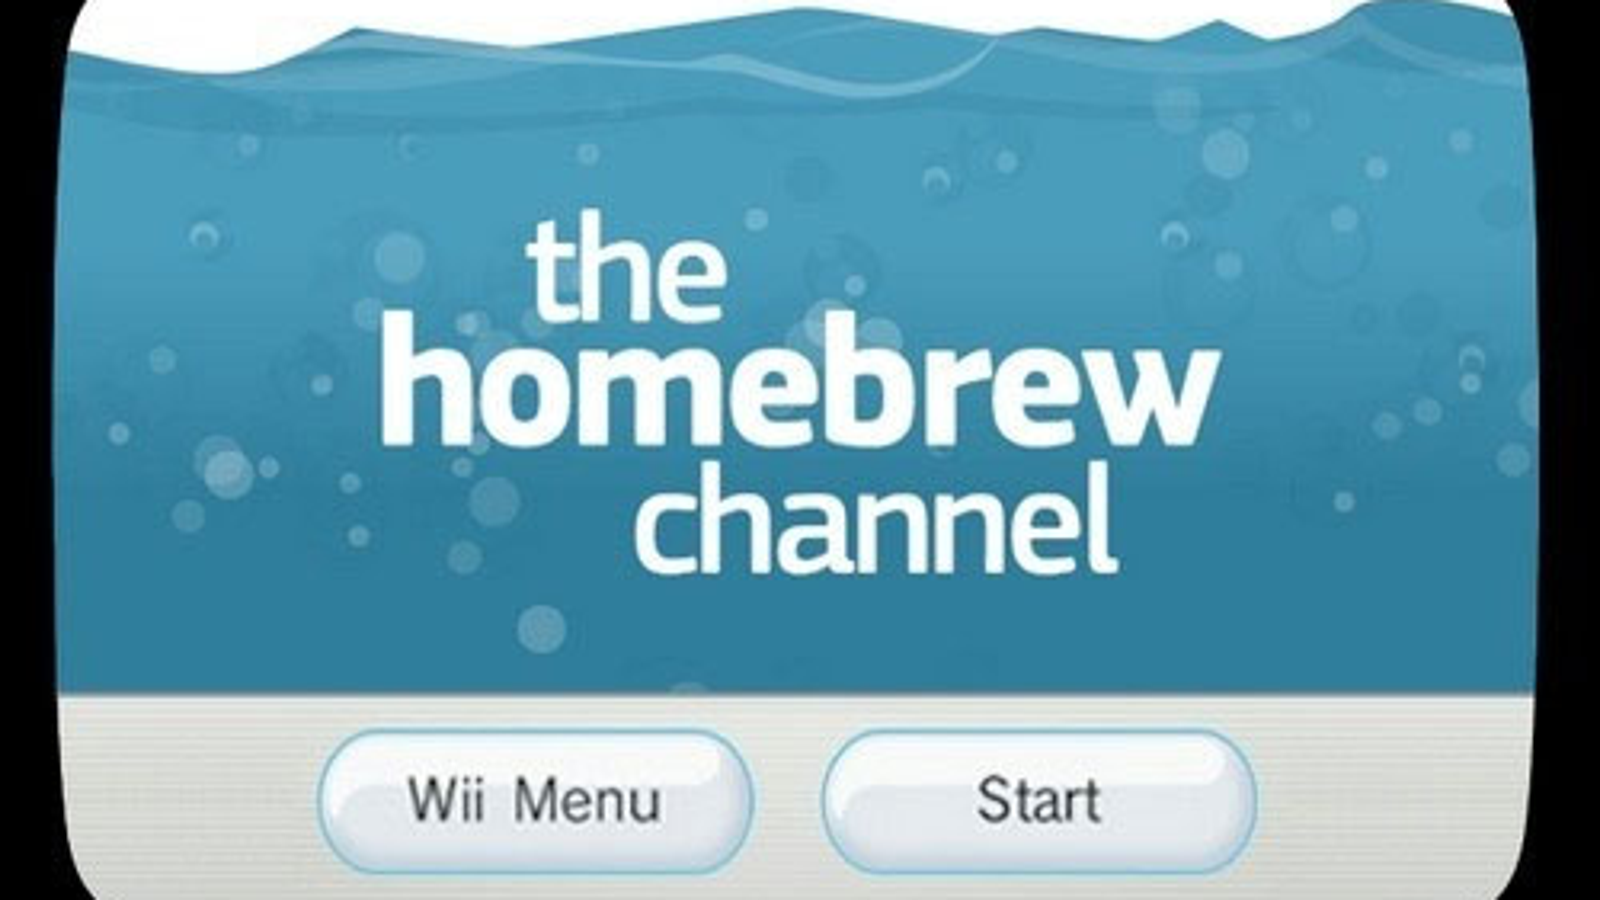 wii homebrew channel update